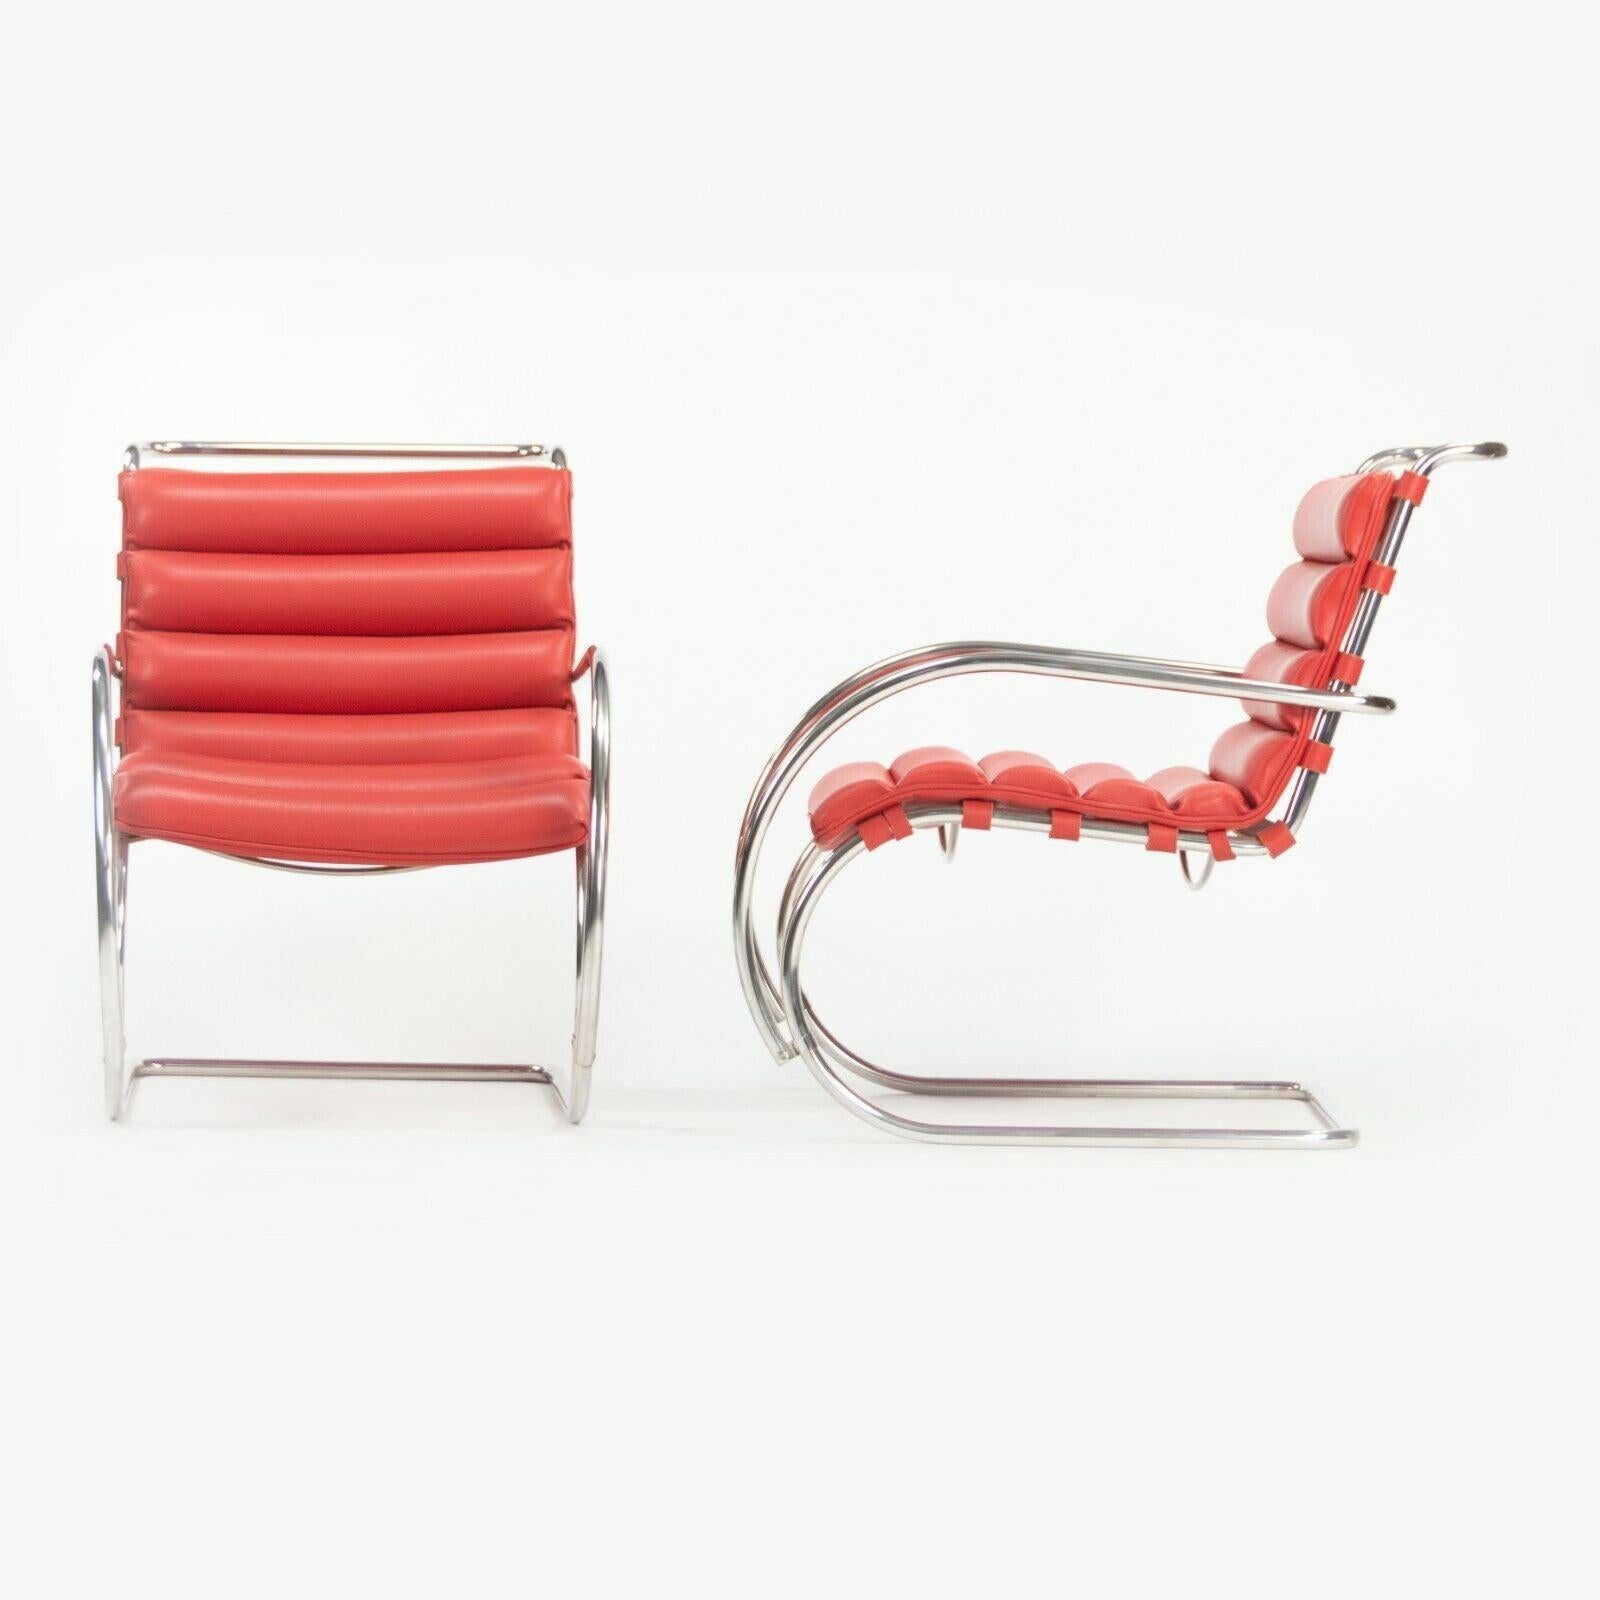 Zum Verkauf steht ein (separat verkaufter) Mies Van Der Rohe für Knoll Studio MR Sessel in wunderschöner roter Lederpolsterung. Diese Beispiele stammen aus der Executive Lounge einer Bankzentrale in Manhattan. Der Zustand ist insgesamt sehr gut bis